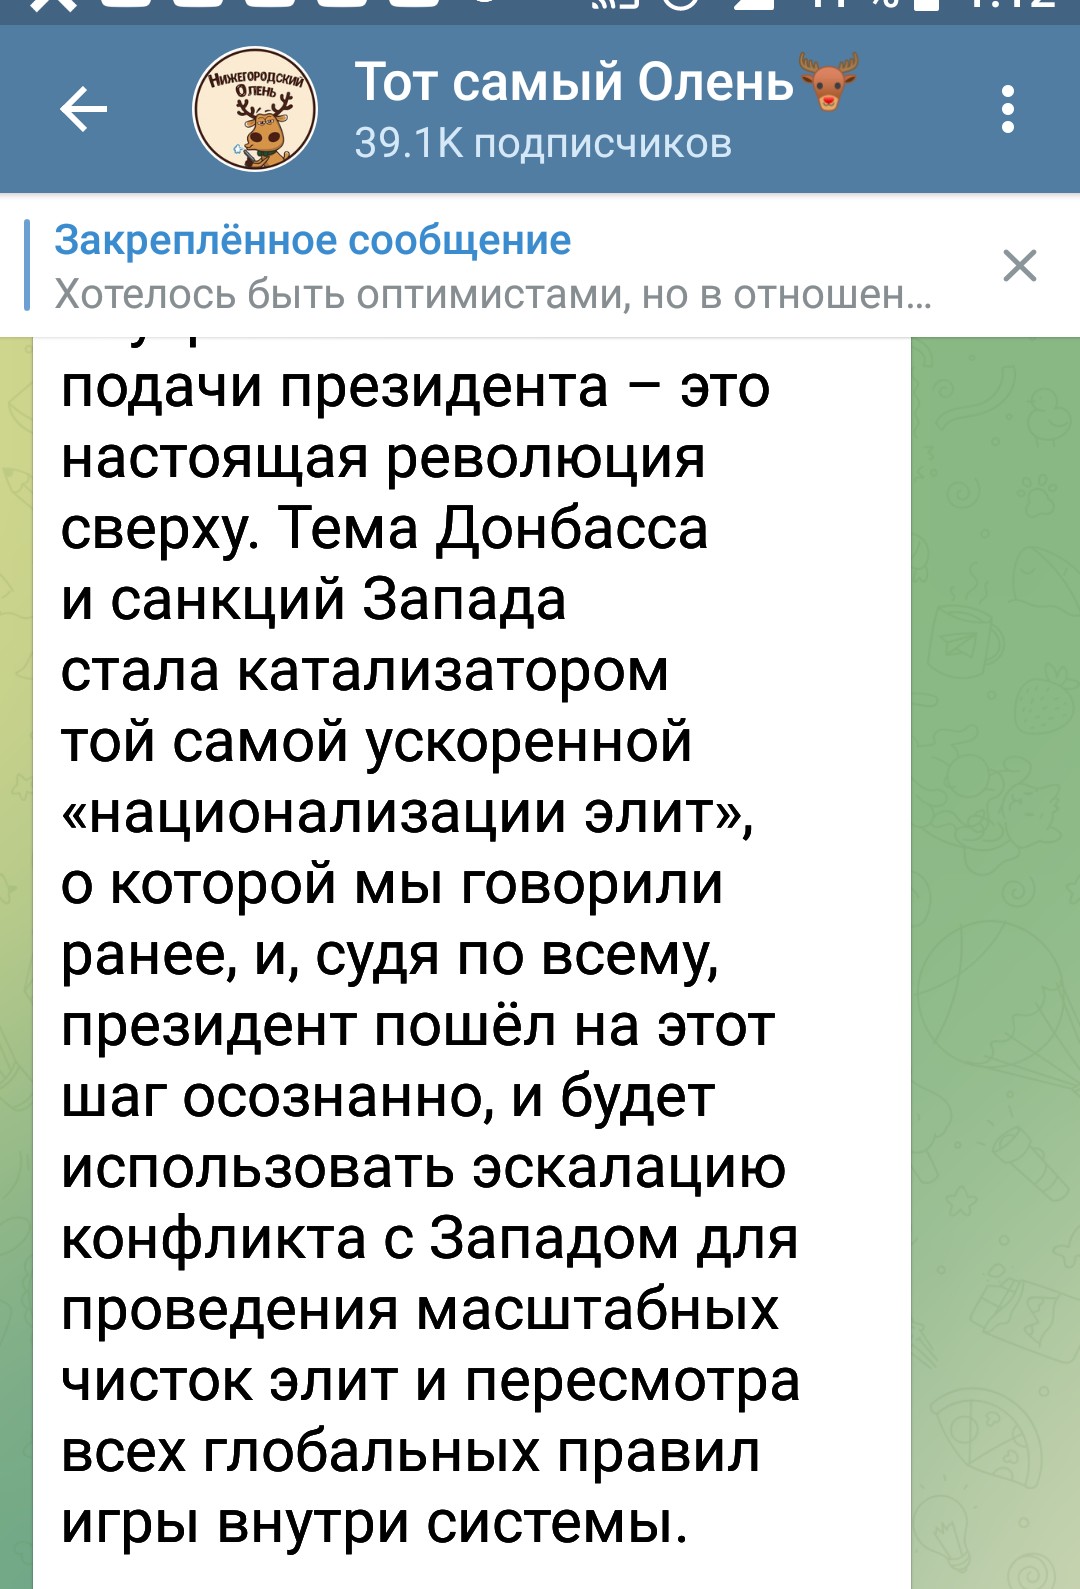 Телеграм-канал: Тот самый Олень: «Это настоящая революция сверху. Тема Донбасса и санкций Запада стала катализатором той самой ускоренной «национализации элит».» (23.02.22)